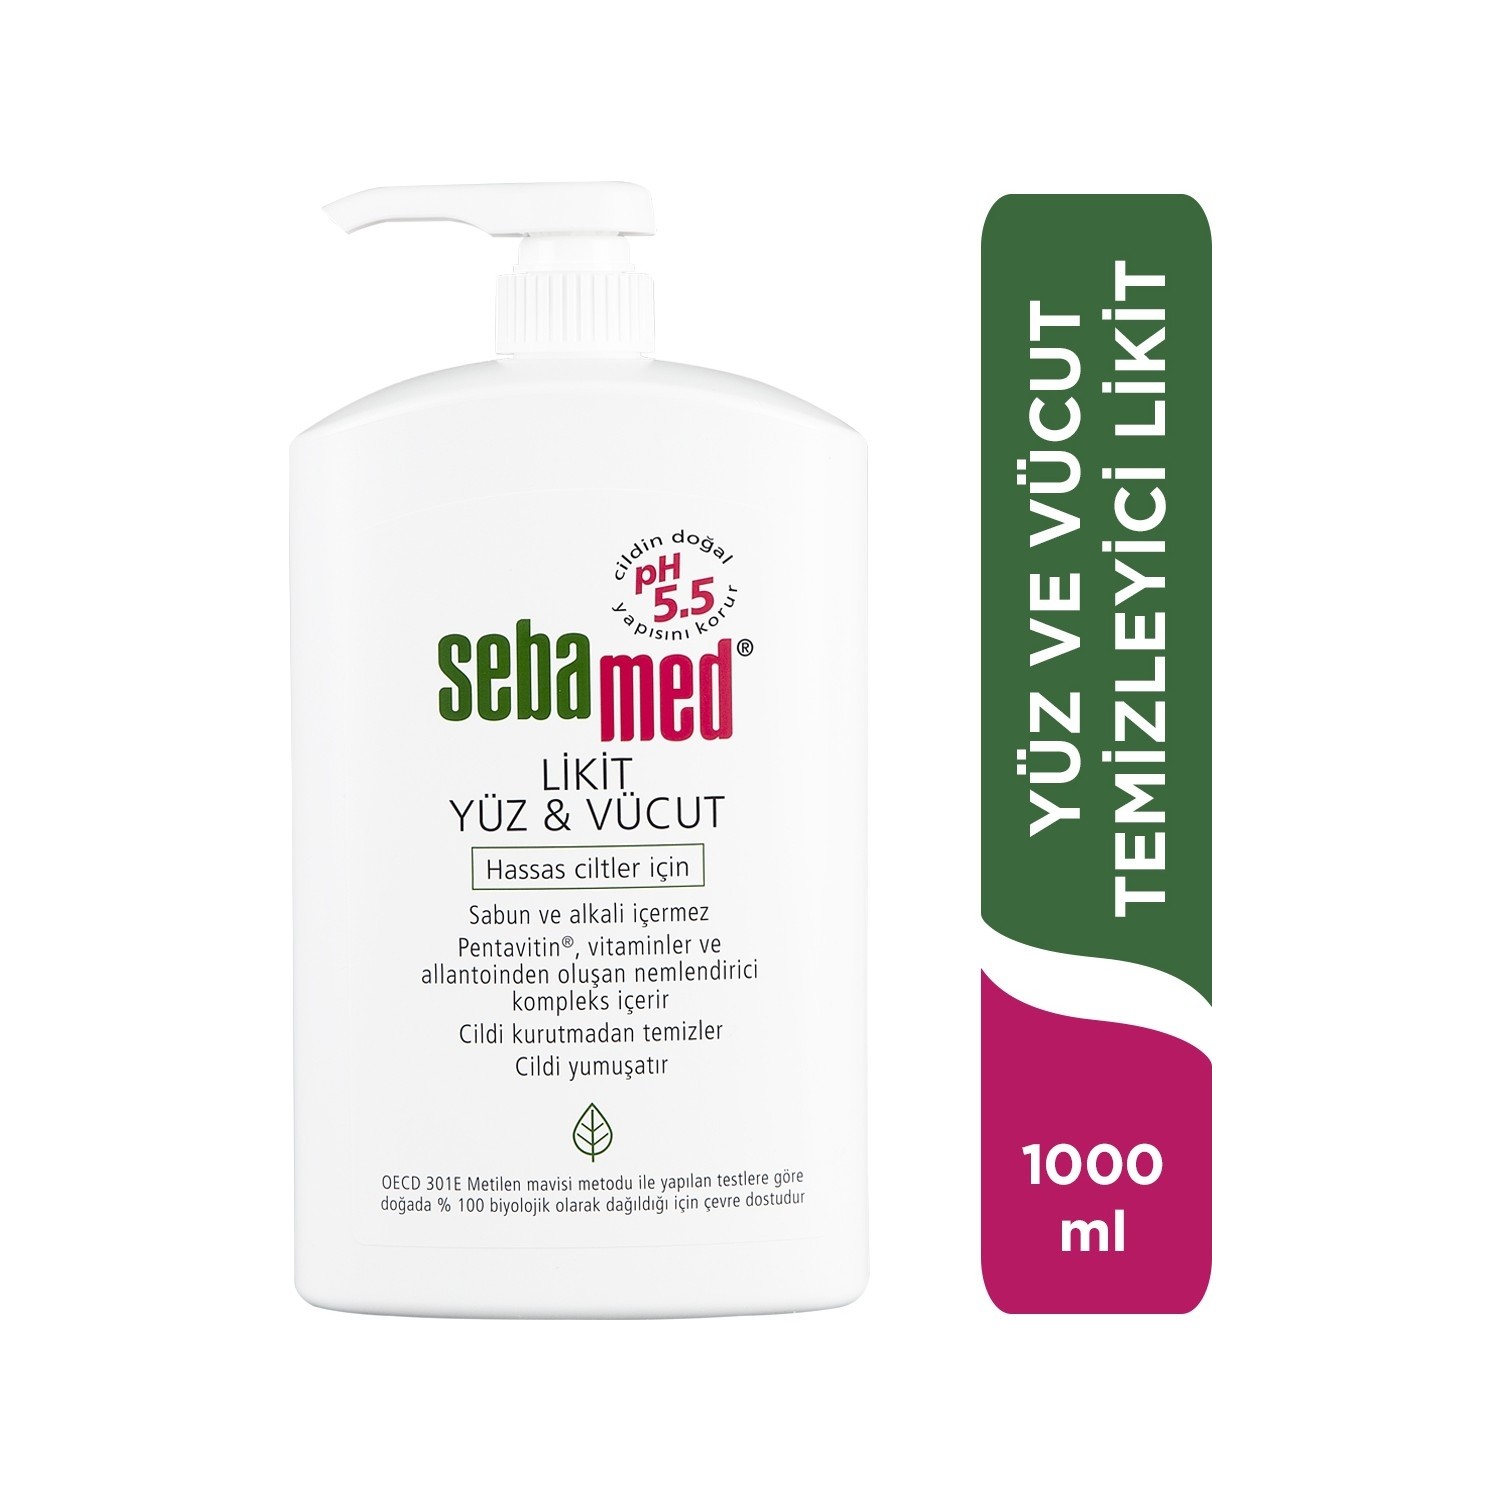 Очищающее средство Sebamed Liquid для лица и тела, 1000 мл гель для душа sebamed очищающий гель liquid face